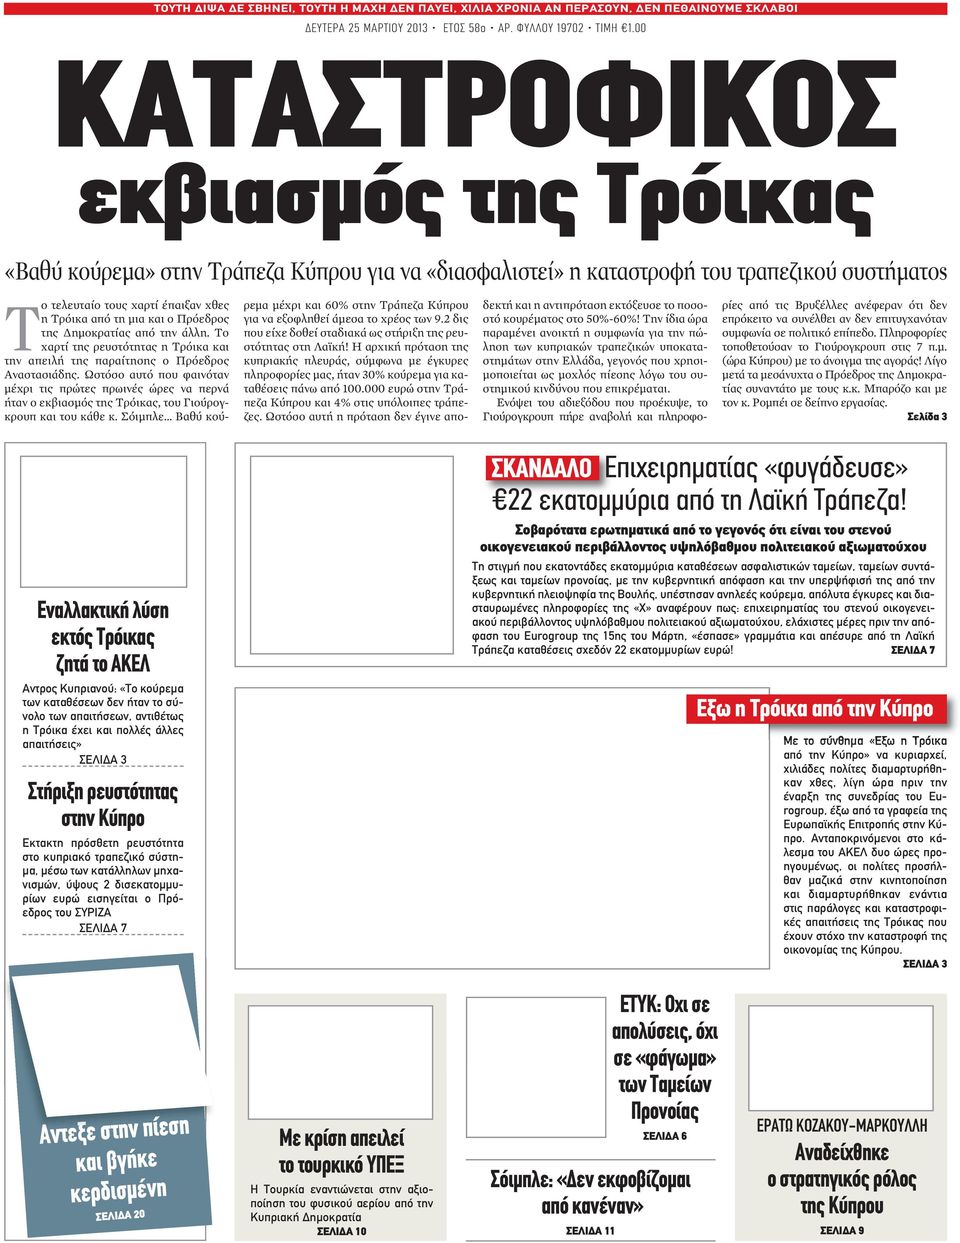 Πρόεδρος της Δημοκρατίας από την άλλη. Το χαρτί της ρευστότητας η Τρόικα και την απειλή της παραίτησης ο Πρόεδρος Αναστασιάδης.